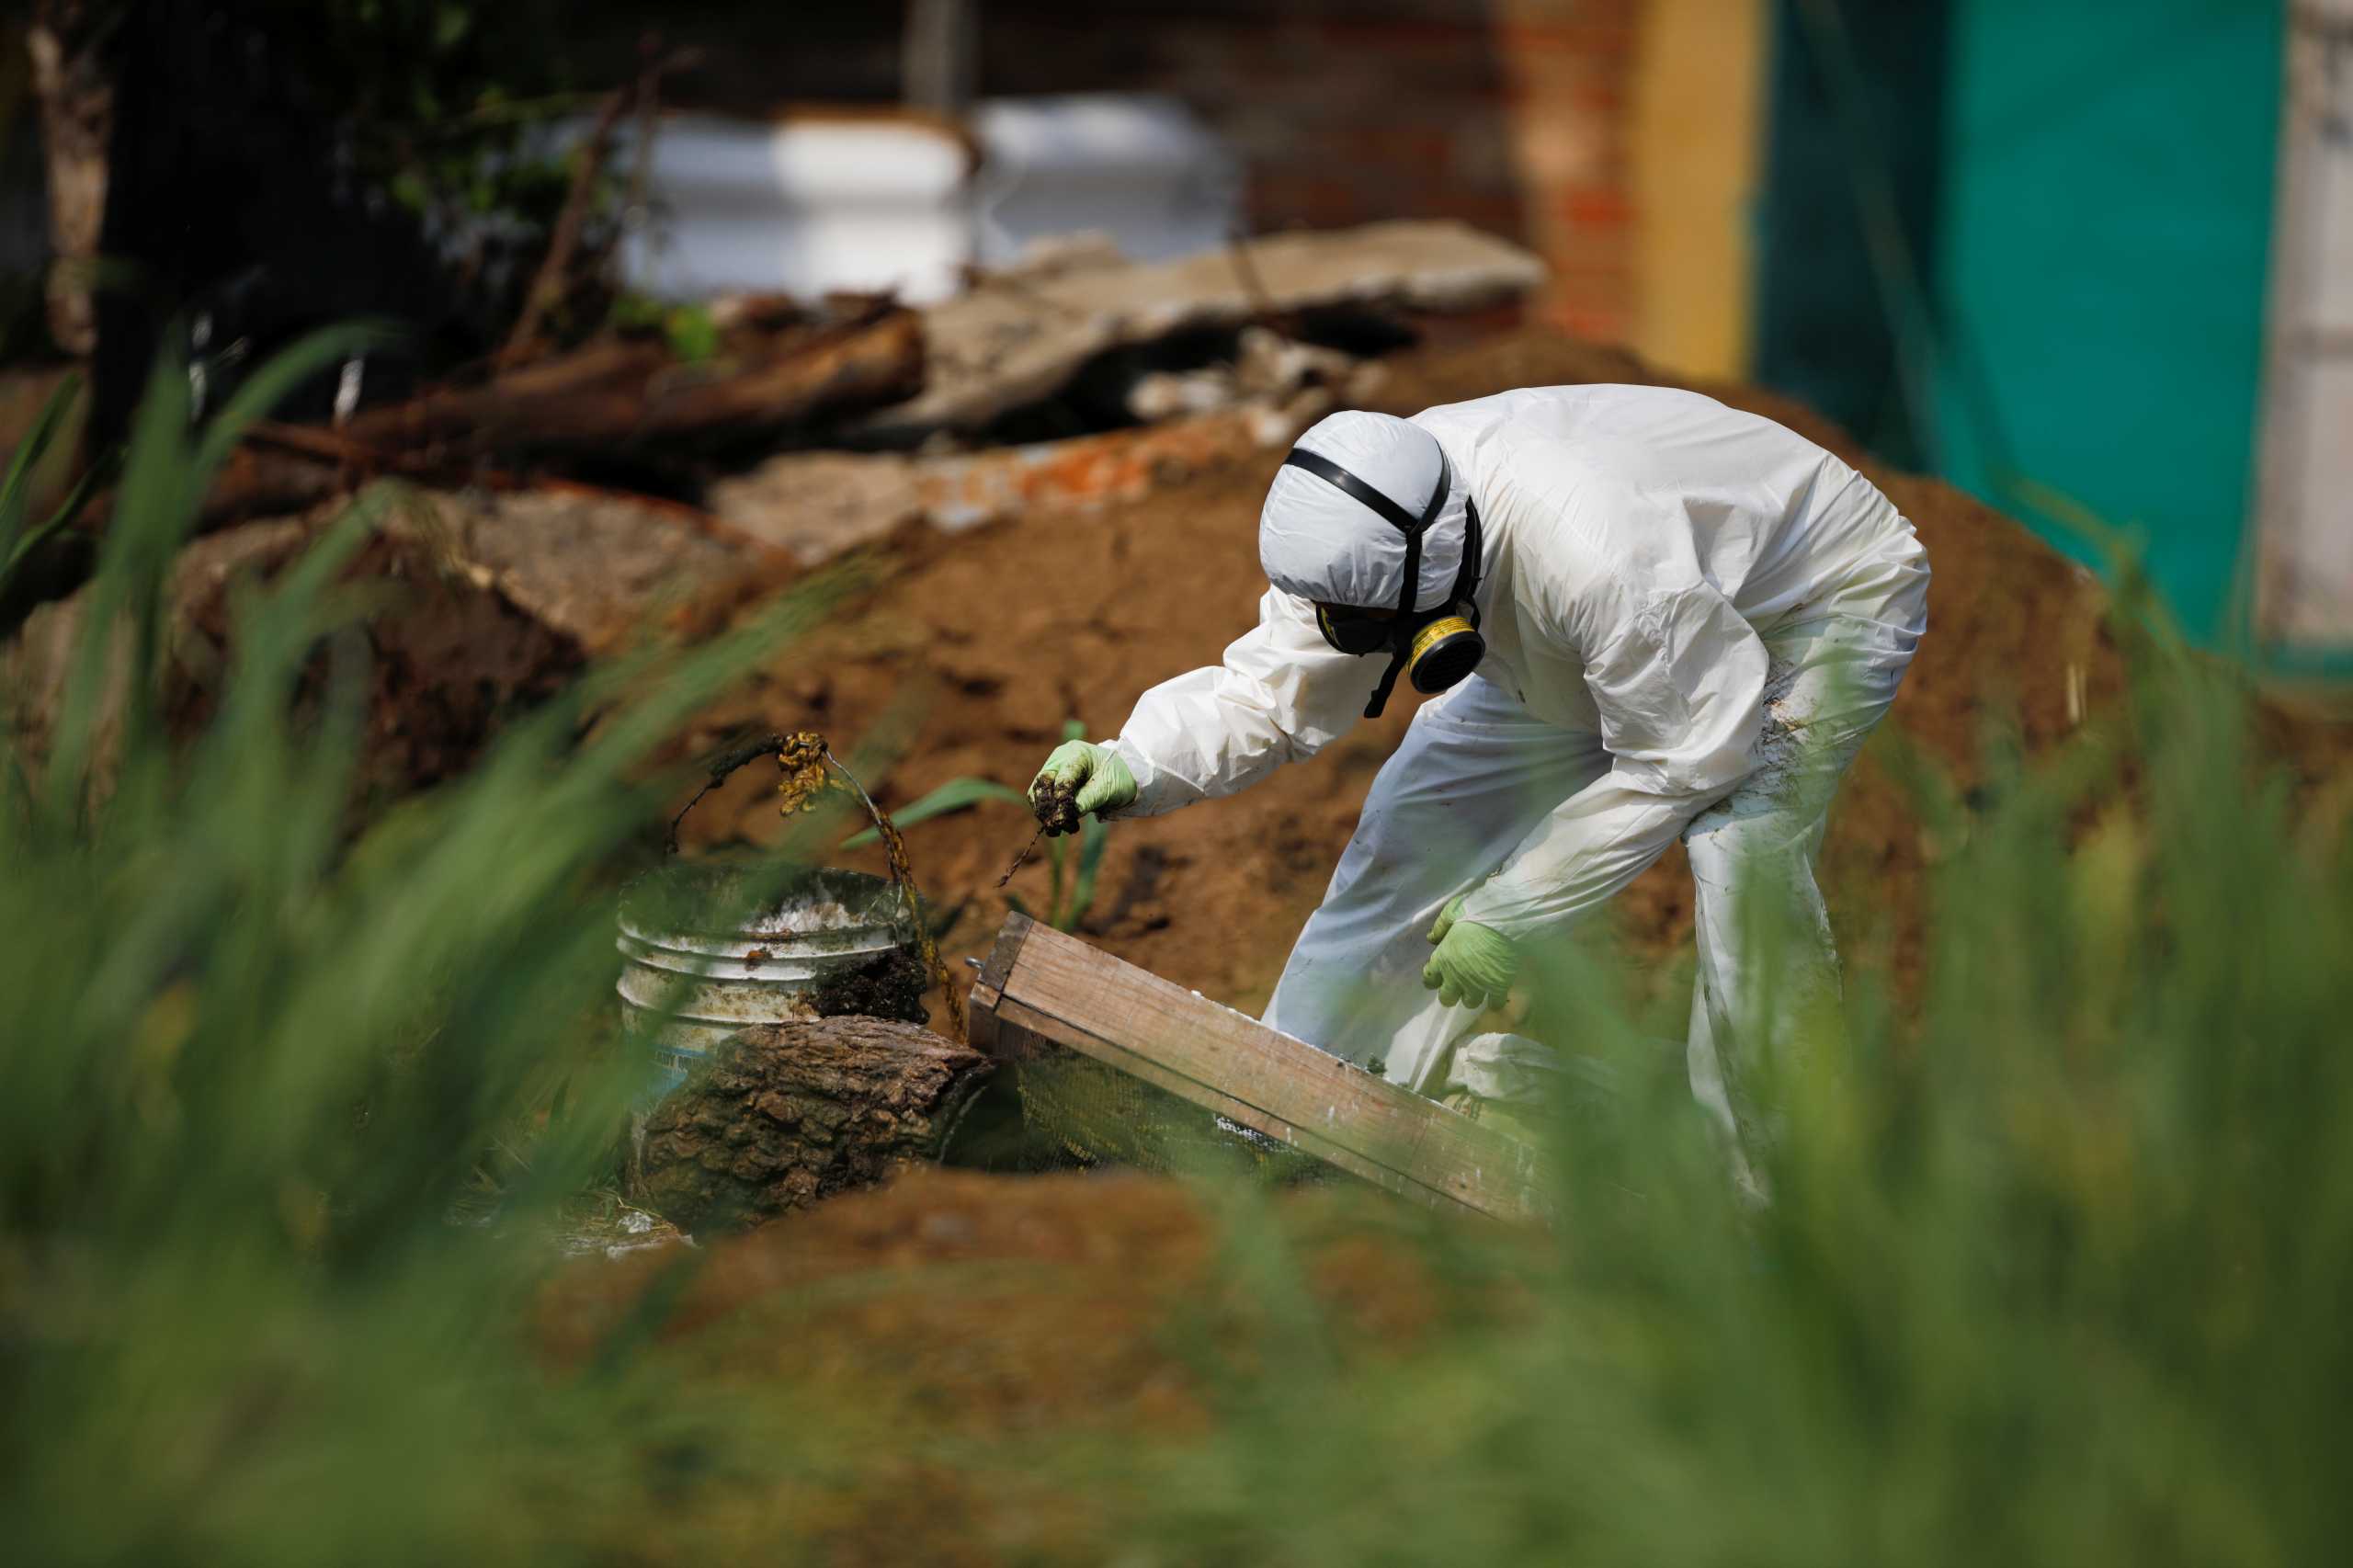 Ελ Σαλβαδόρ: Βρήκαν μυστικό νεκροταφείο με 40 πτώματα στο σπίτι πρώην αστυνομικού